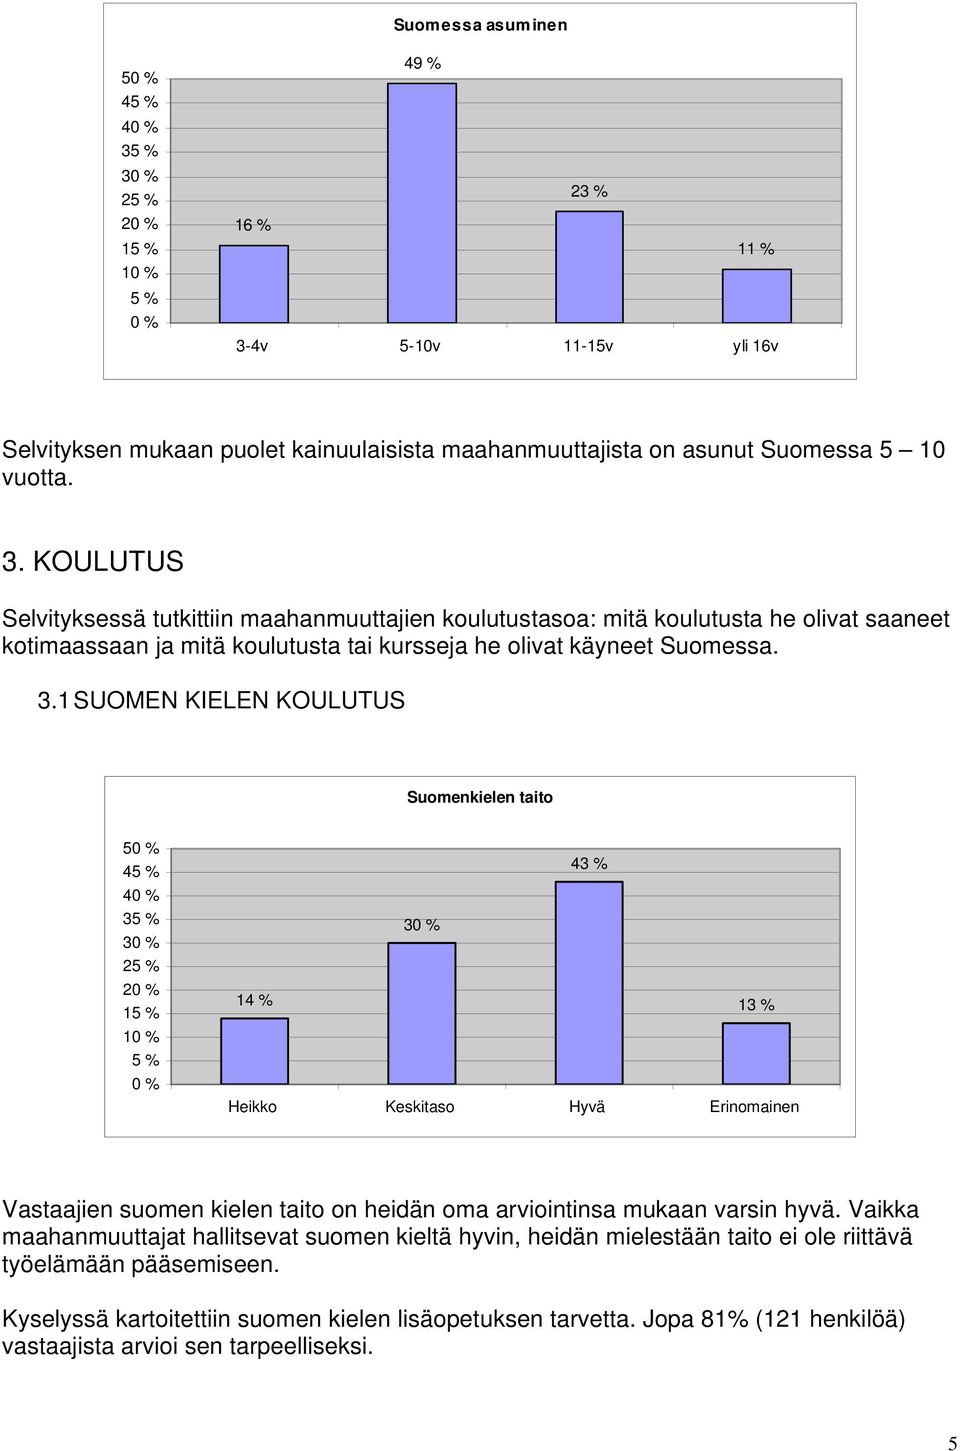 KOULUTUS Selvityksessä tutkittiin maahanmuuttajien koulutustasoa: mitä koulutusta he olivat saaneet kotimaassaan ja mitä koulutusta tai kursseja he olivat käyneet Suomessa. 3.